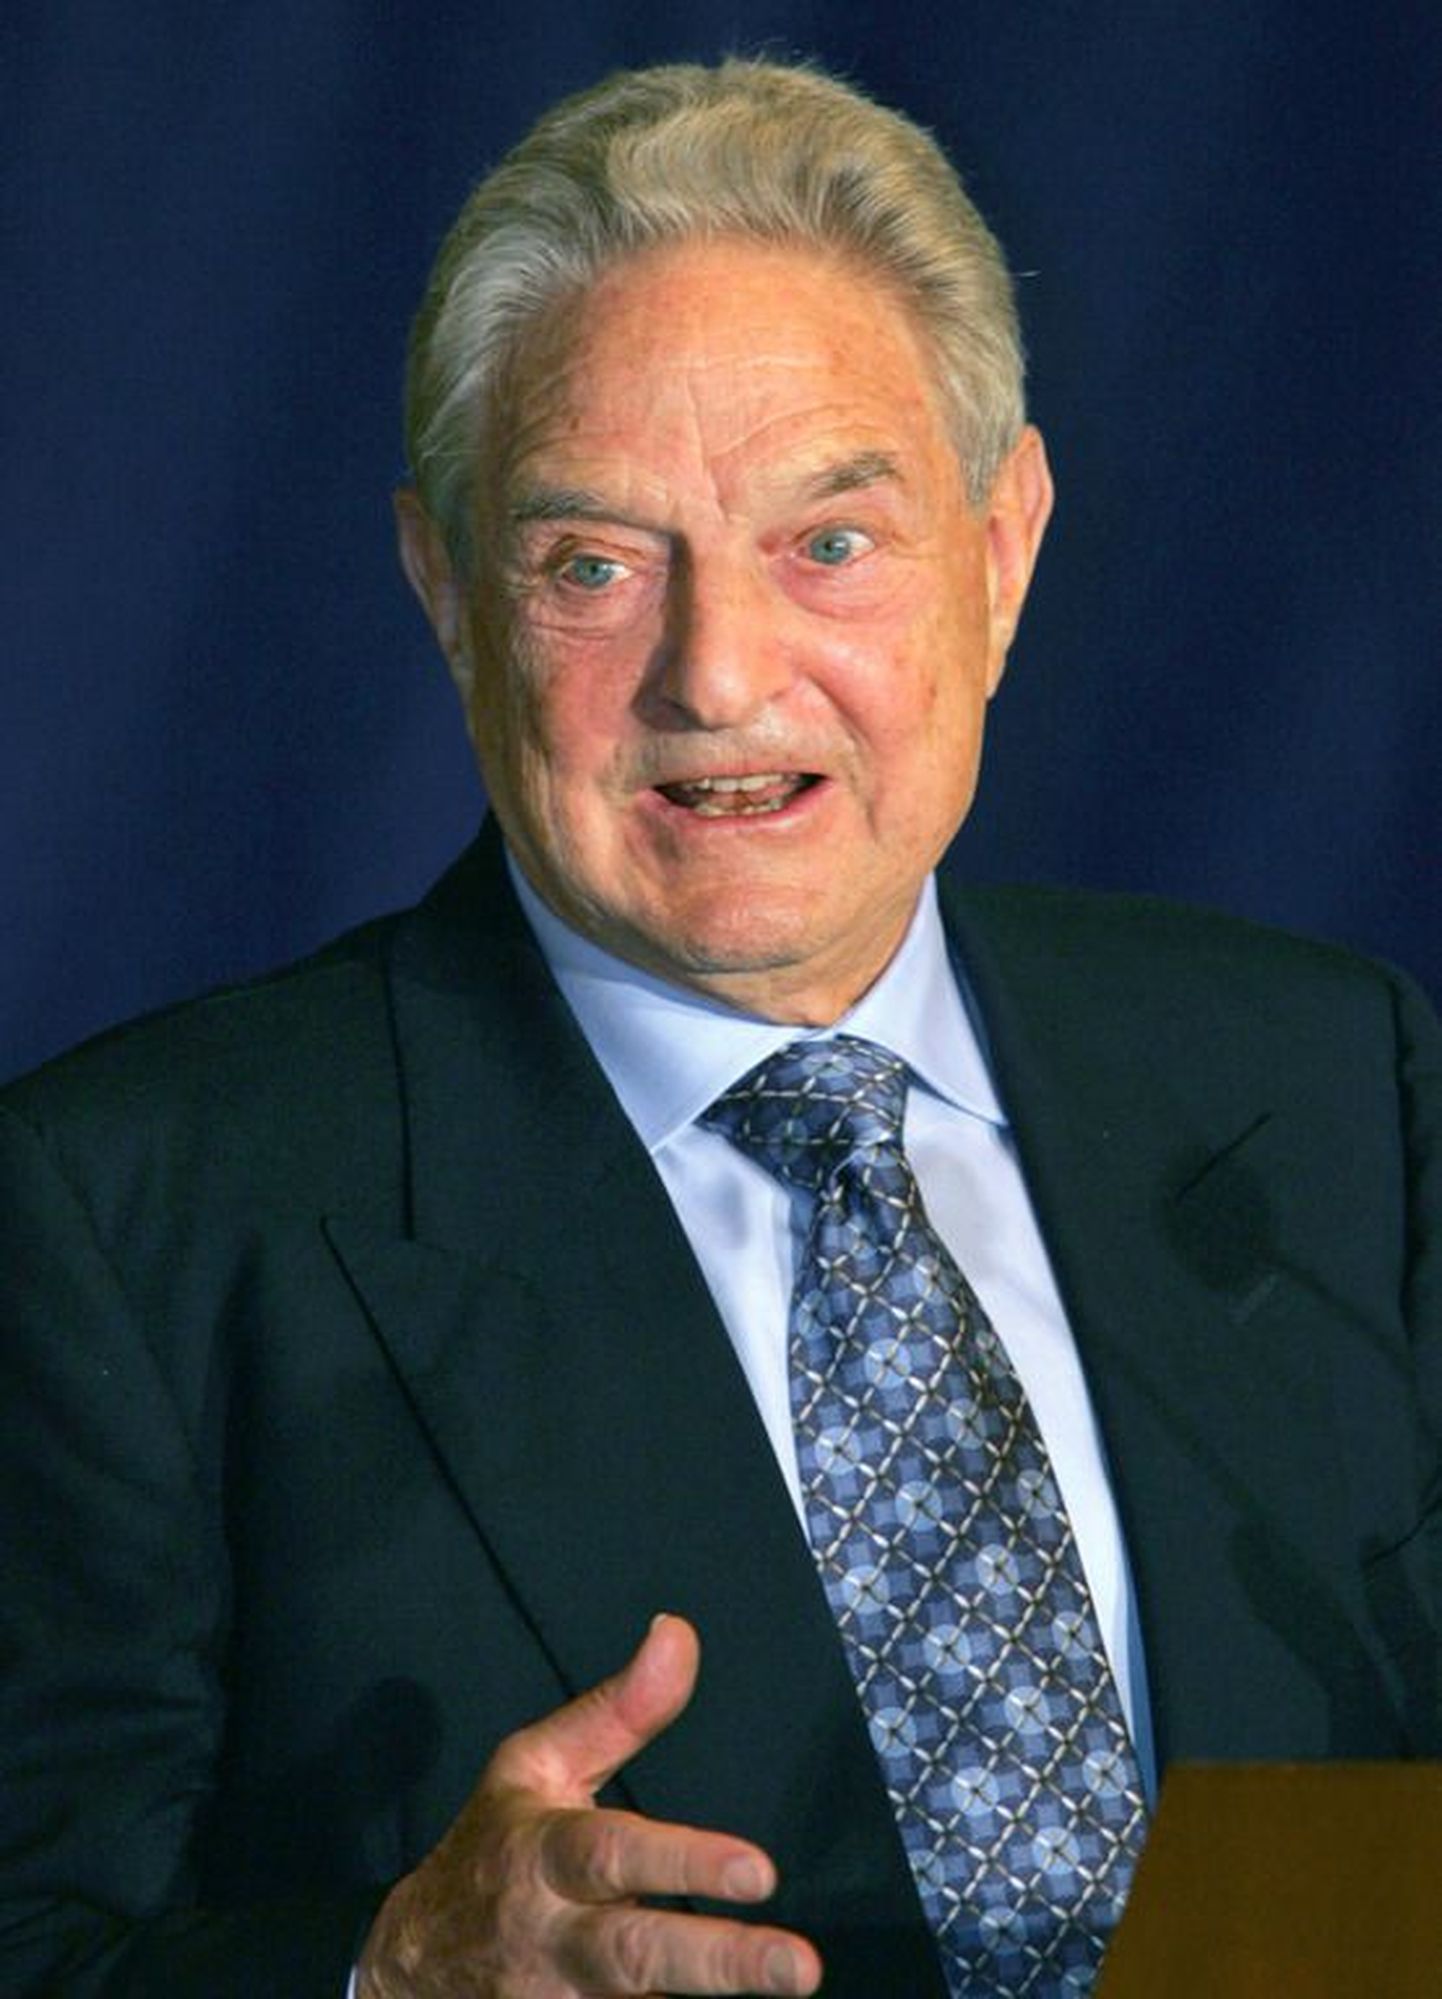 Ungari päritolu USA miljardärist suurinvestor ja filantroop George Soros